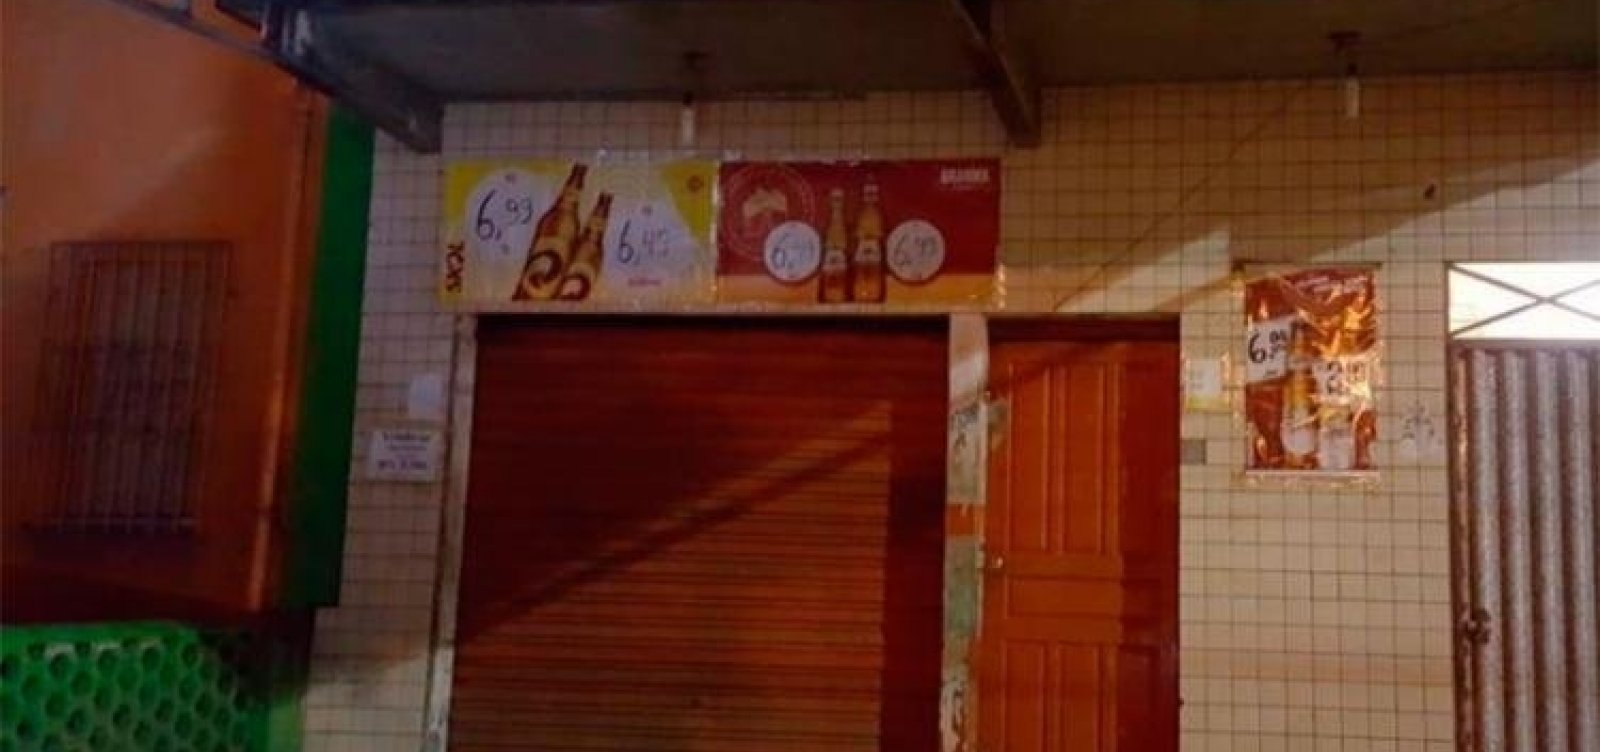 Nove pessoas são baleadas após ataque a bar em Itabuna